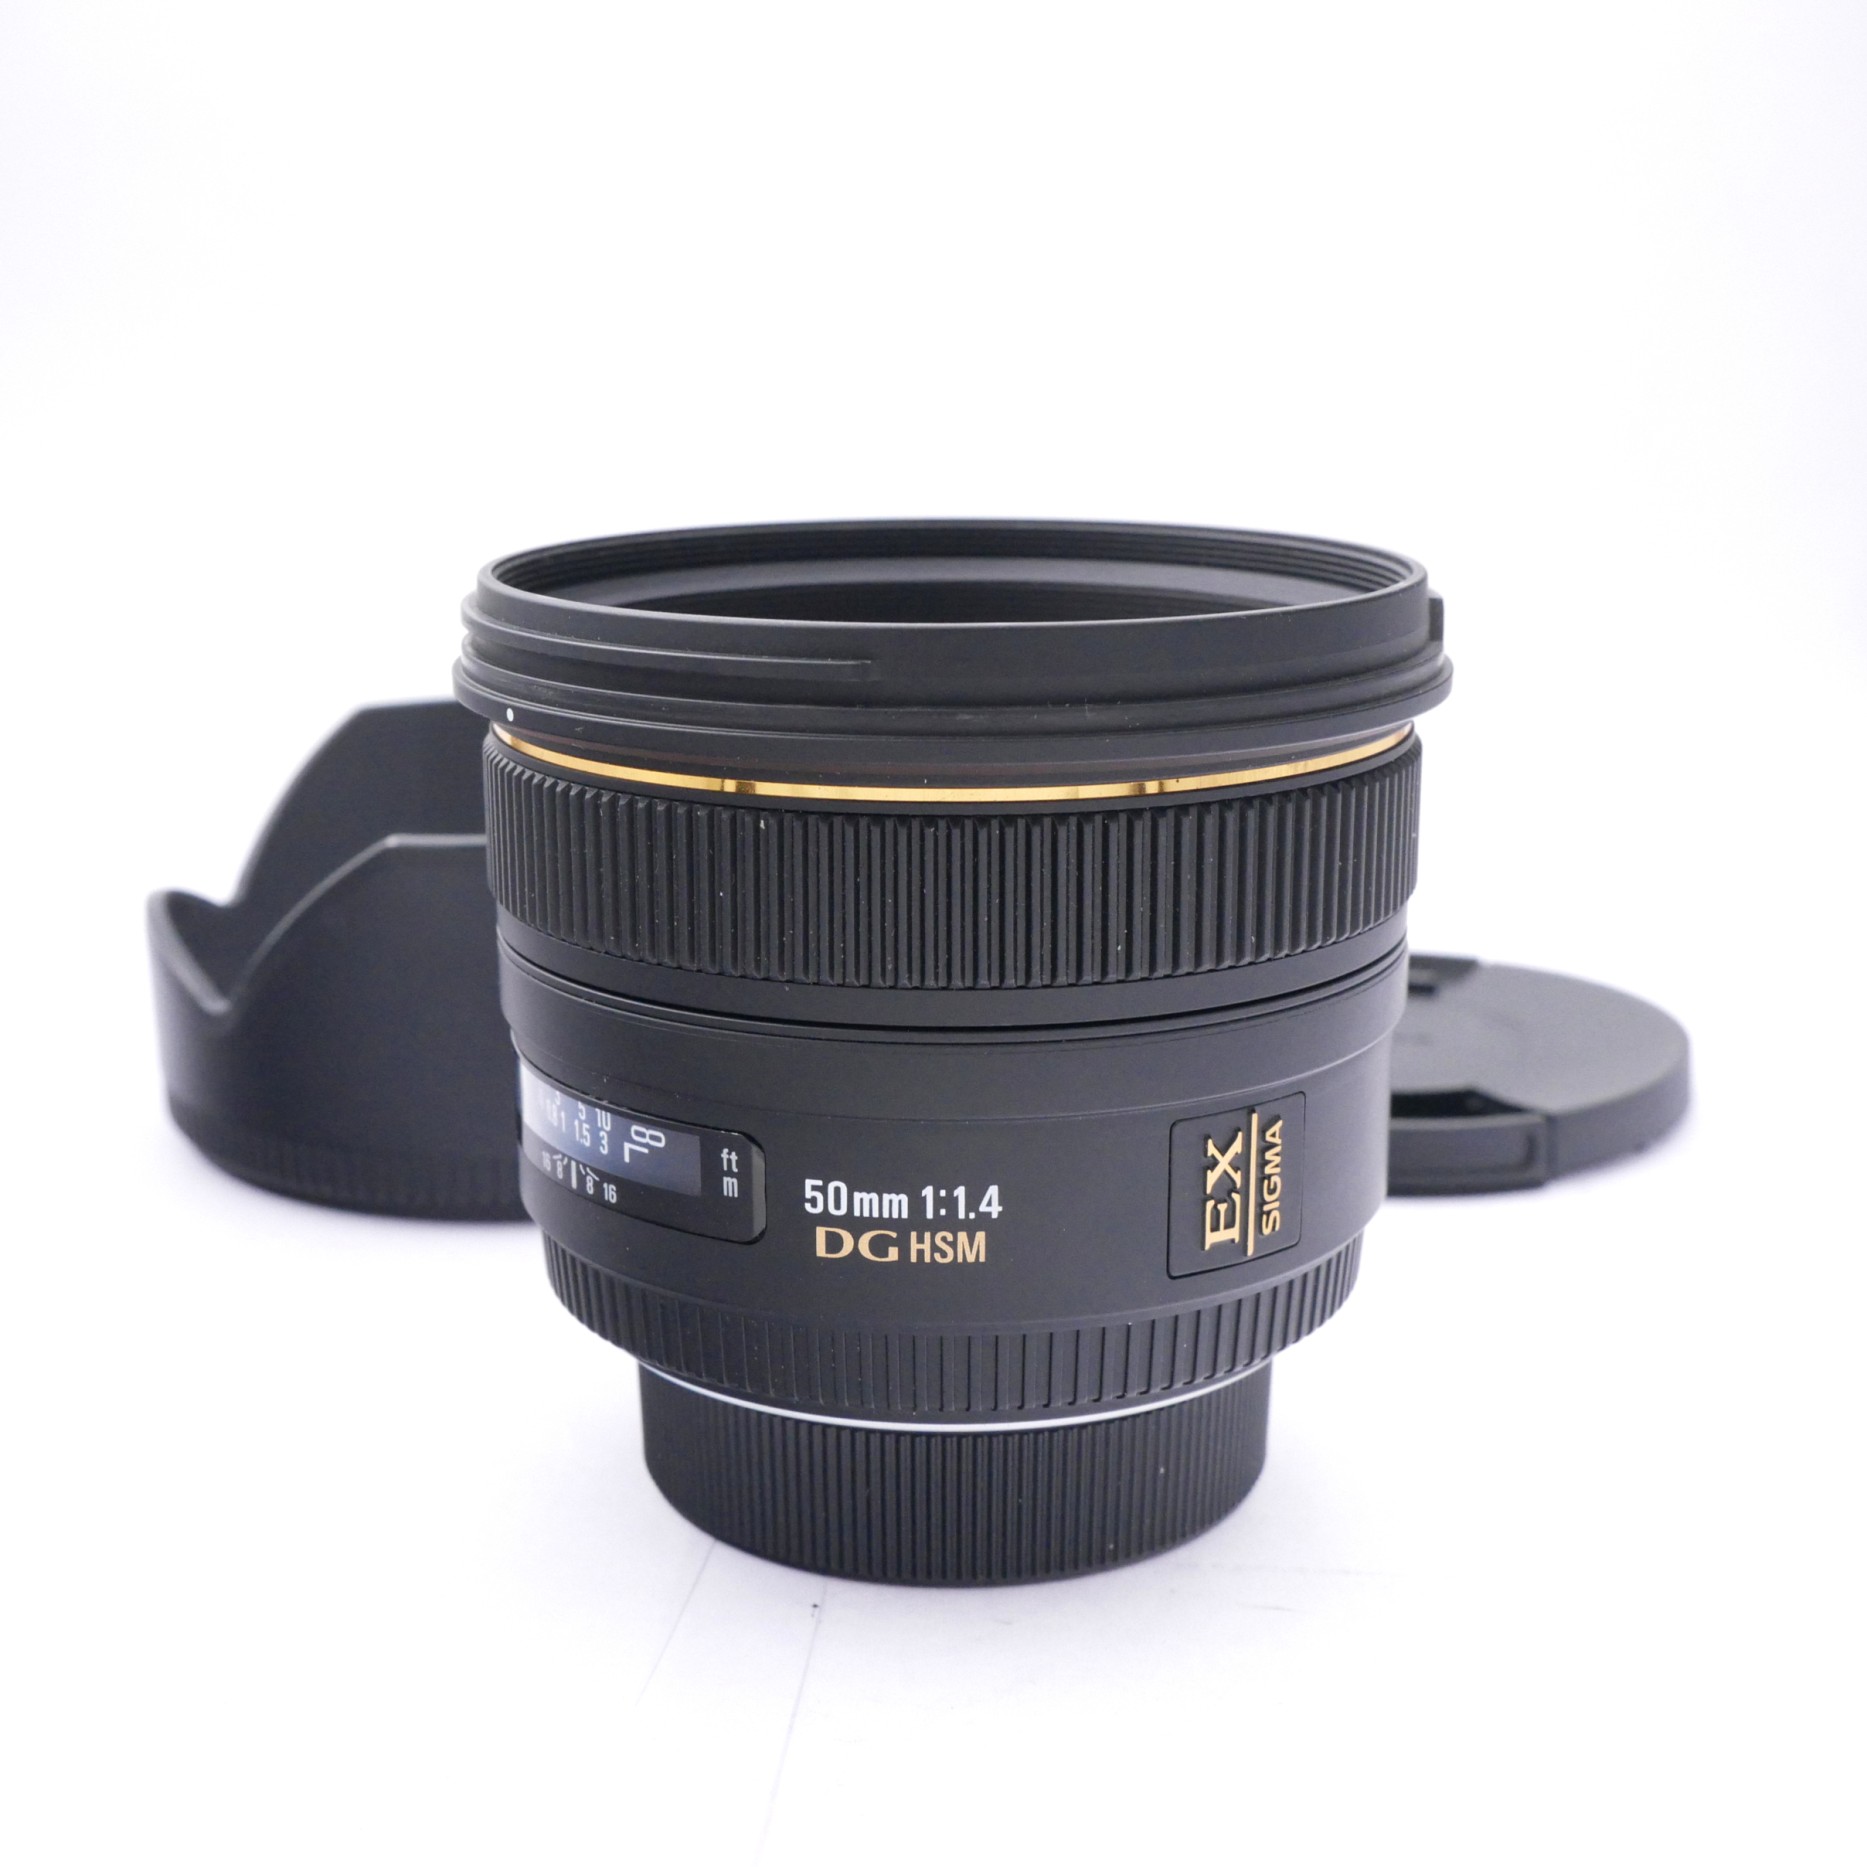 Sigma AF 50mm F1.4 DG HSM Lens in Nikon FX Mount 